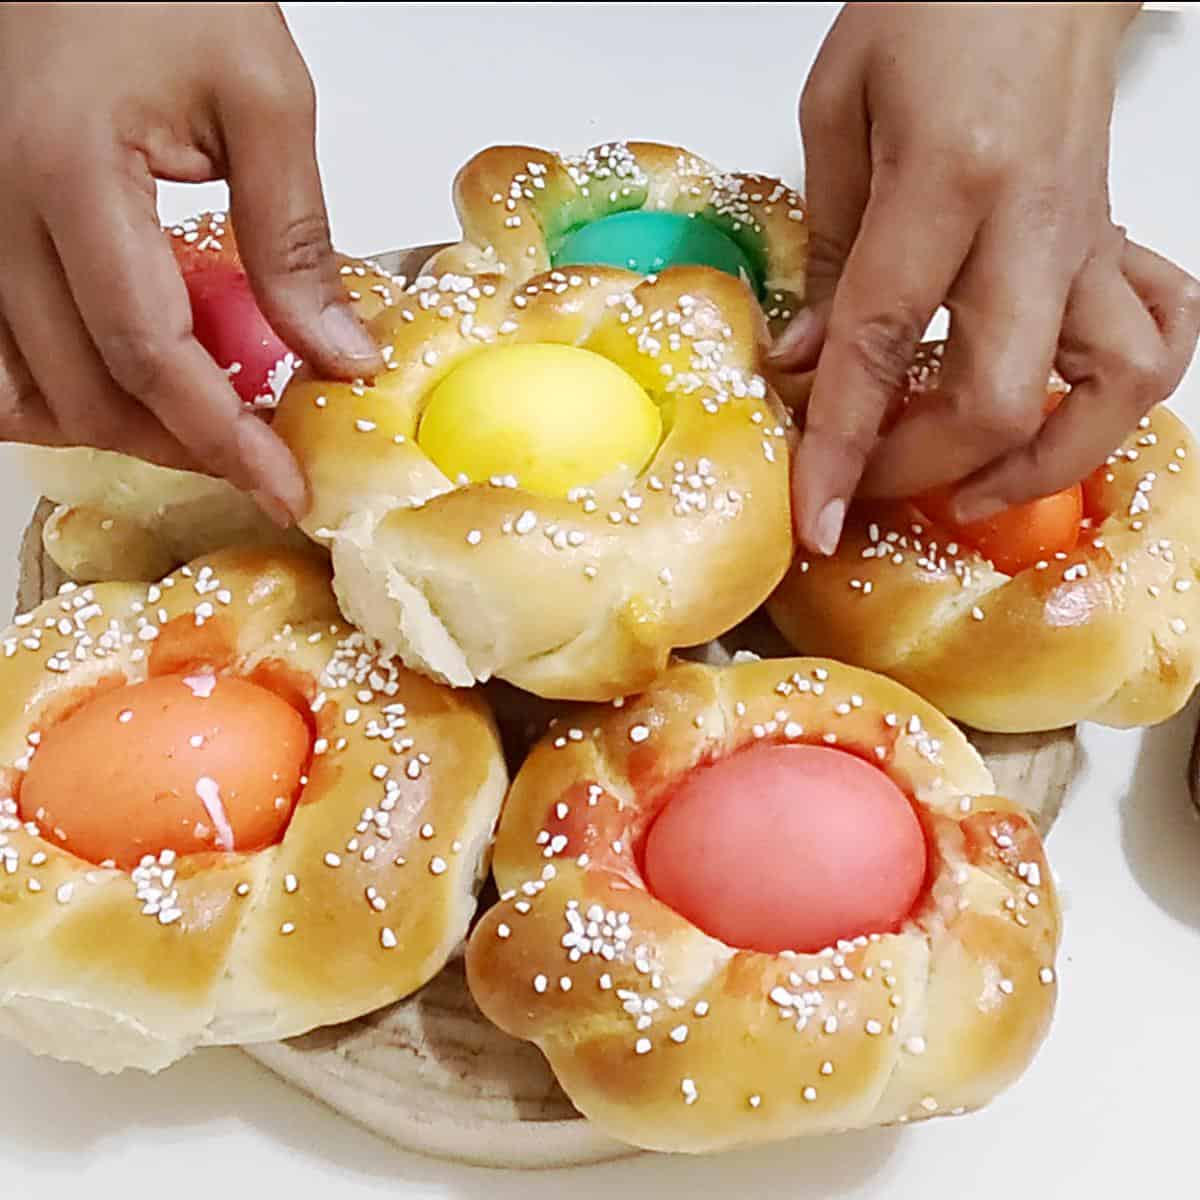 Italian bread with colored eggs.